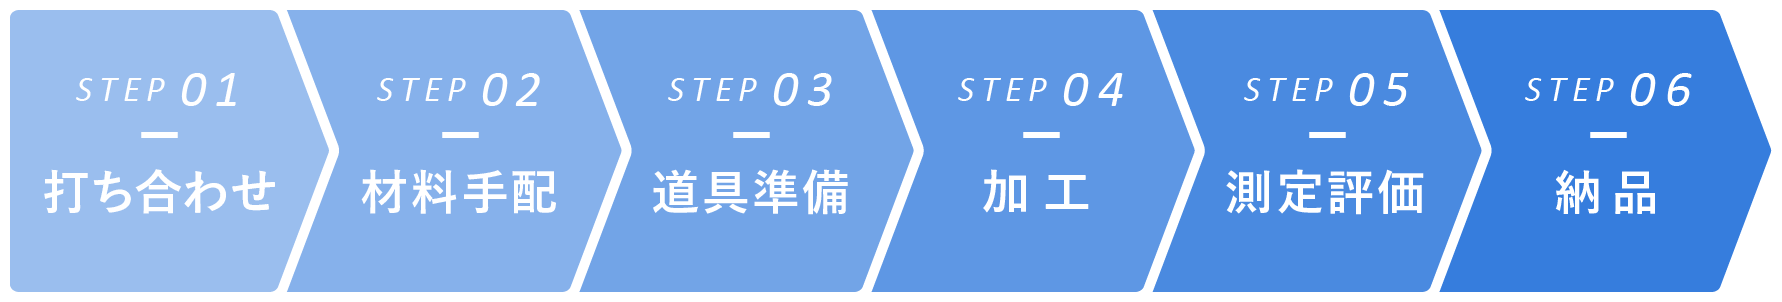 ステップ1　打ち合わせ　　ステップ2　材料手配　　ステップ3　道具準備　　ステップ4　加工　　ステップ5　測定評価　　ステップ6　納品